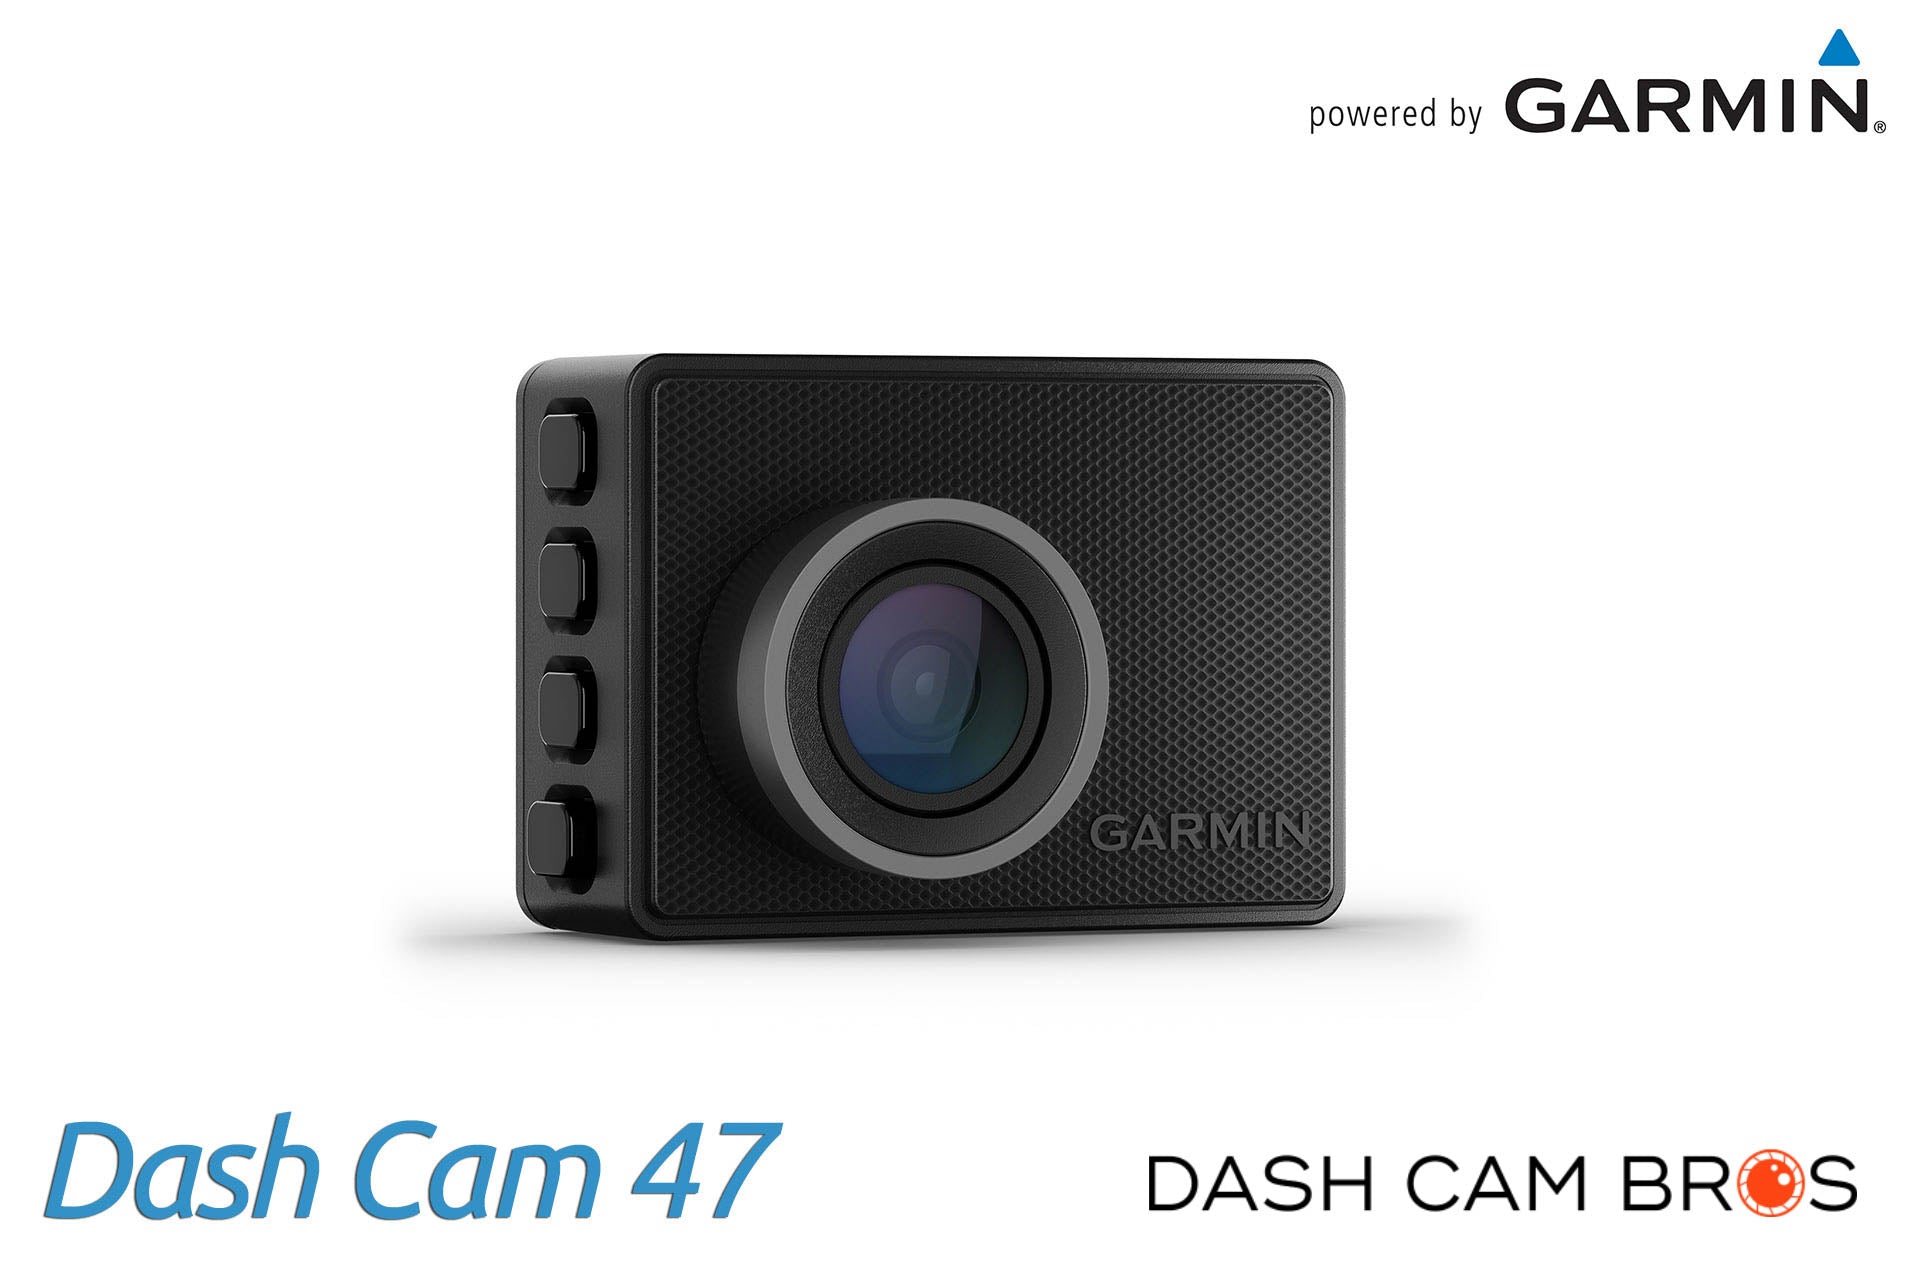 http://dashcambros.com/cdn/shop/products/dashcambros.com-garmin-dash-cam-47-1.jpg?v=1624030775